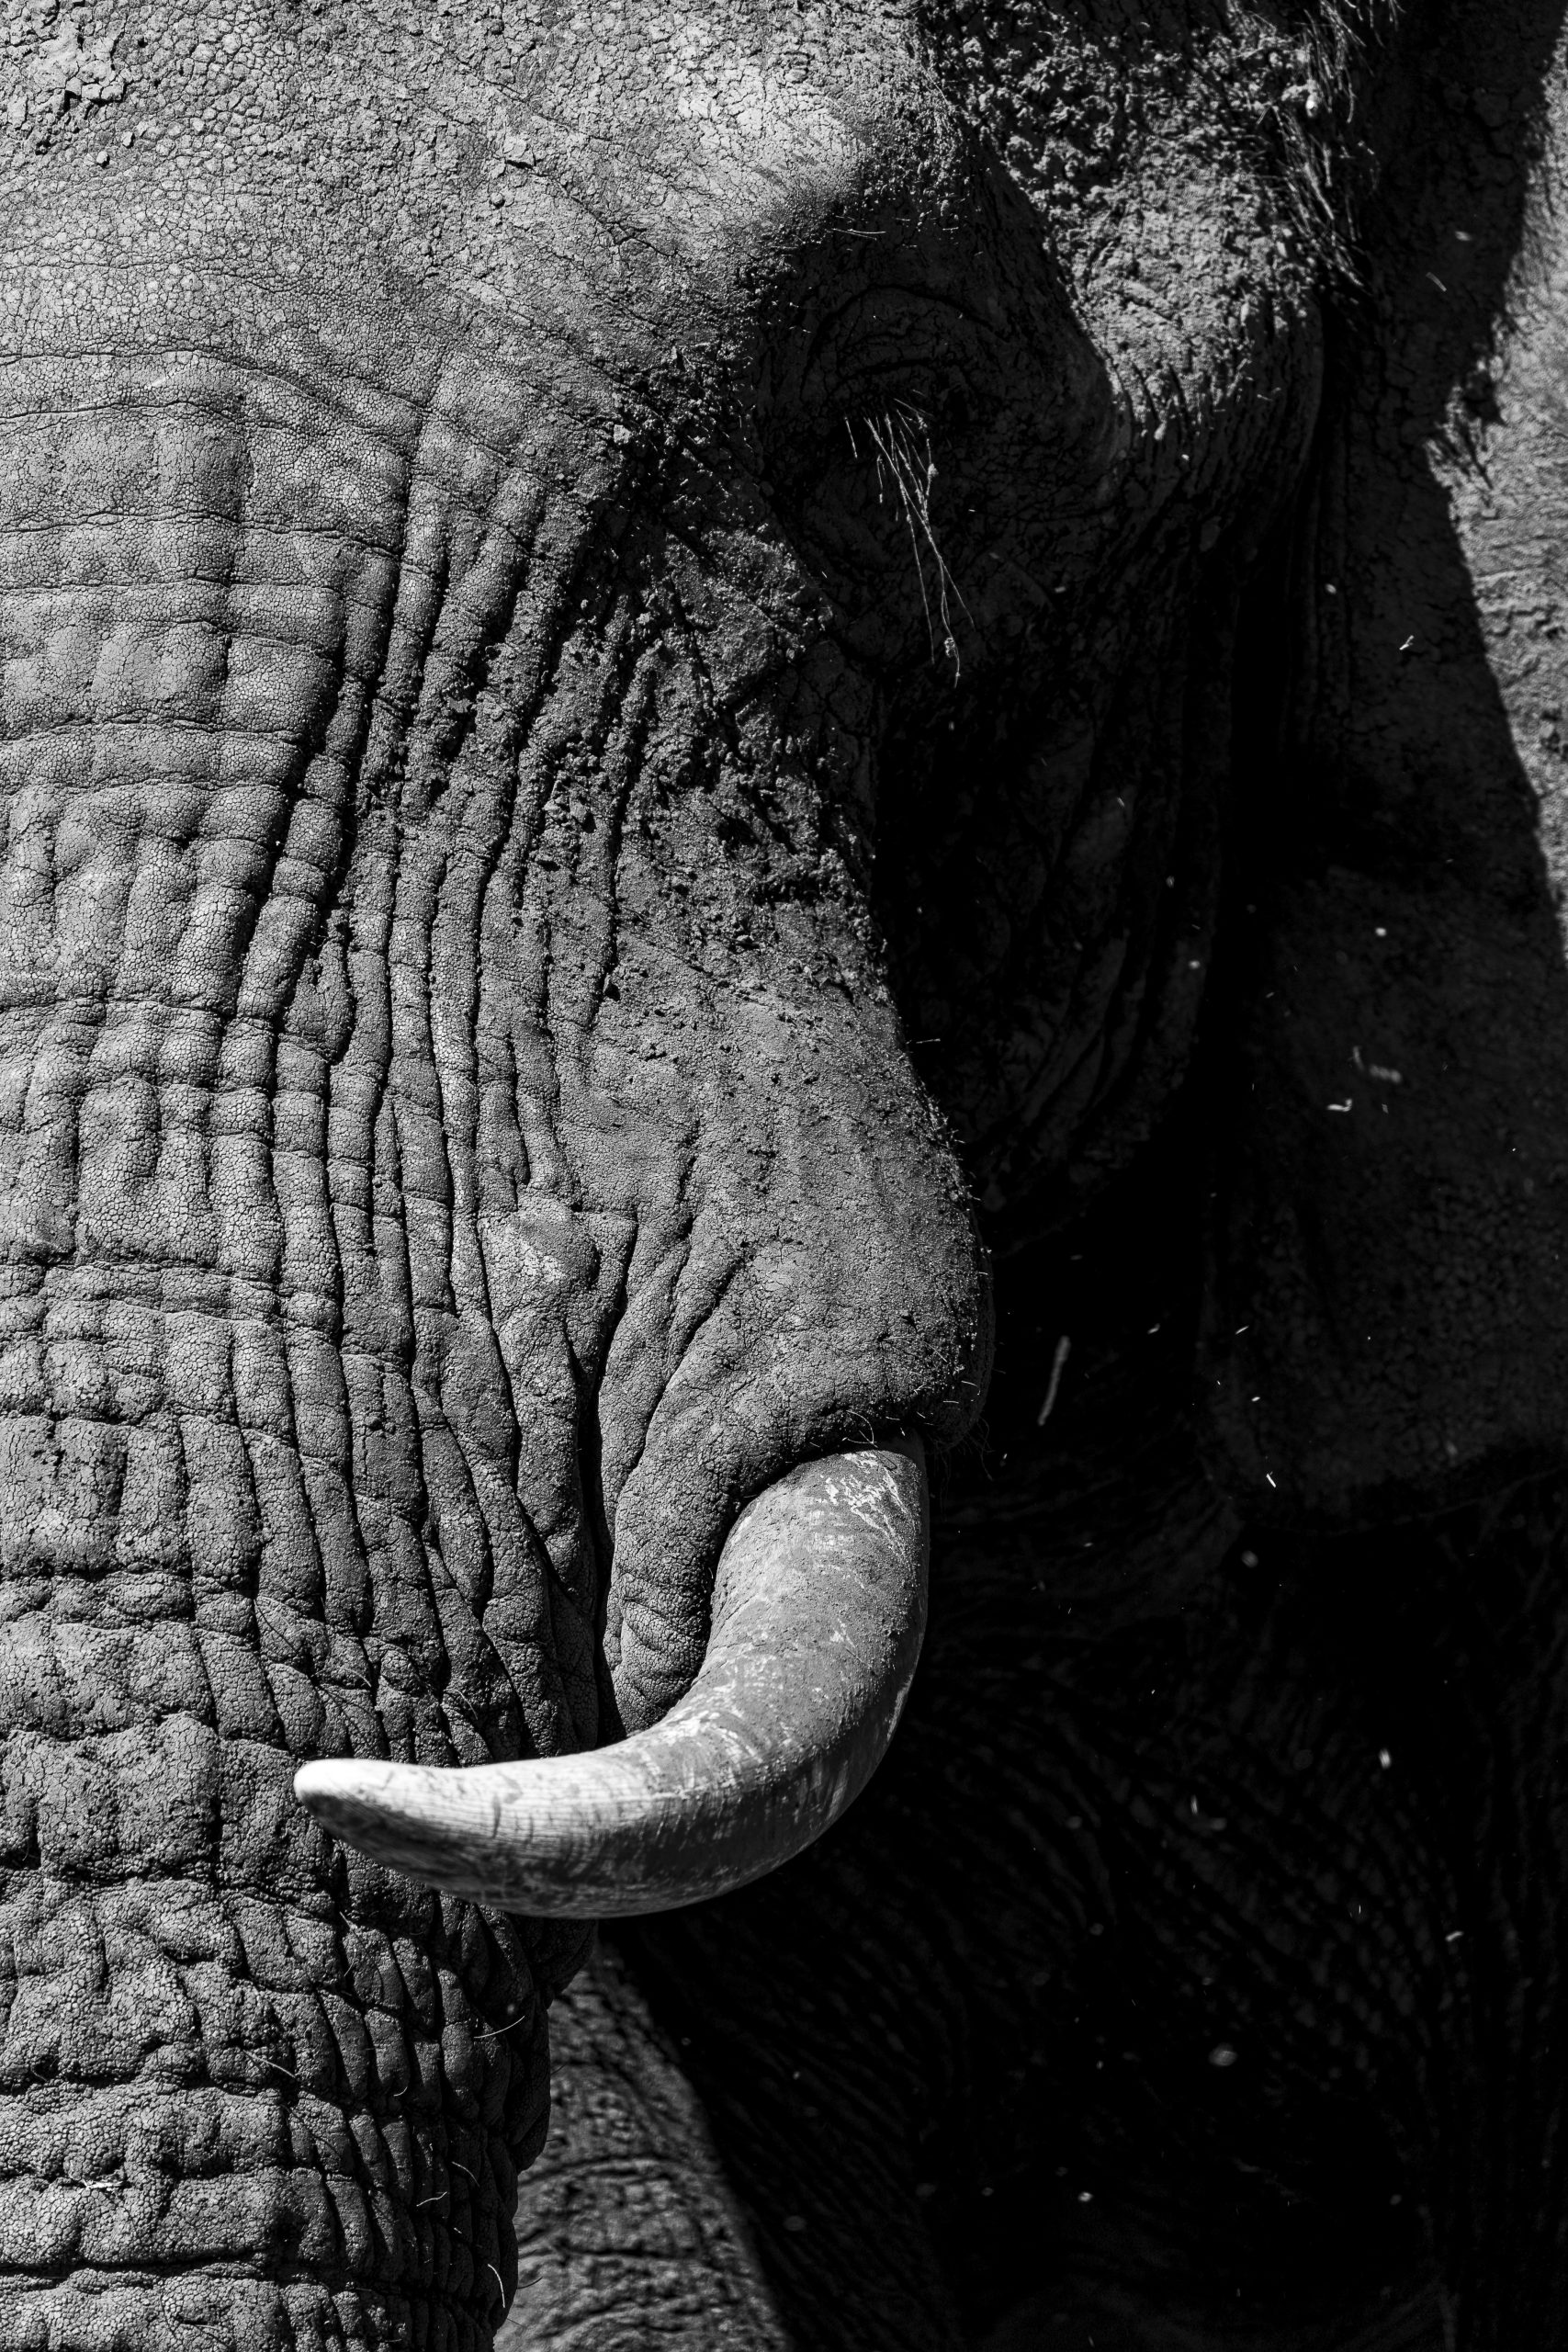 Imagem detalhada da face de um elefante